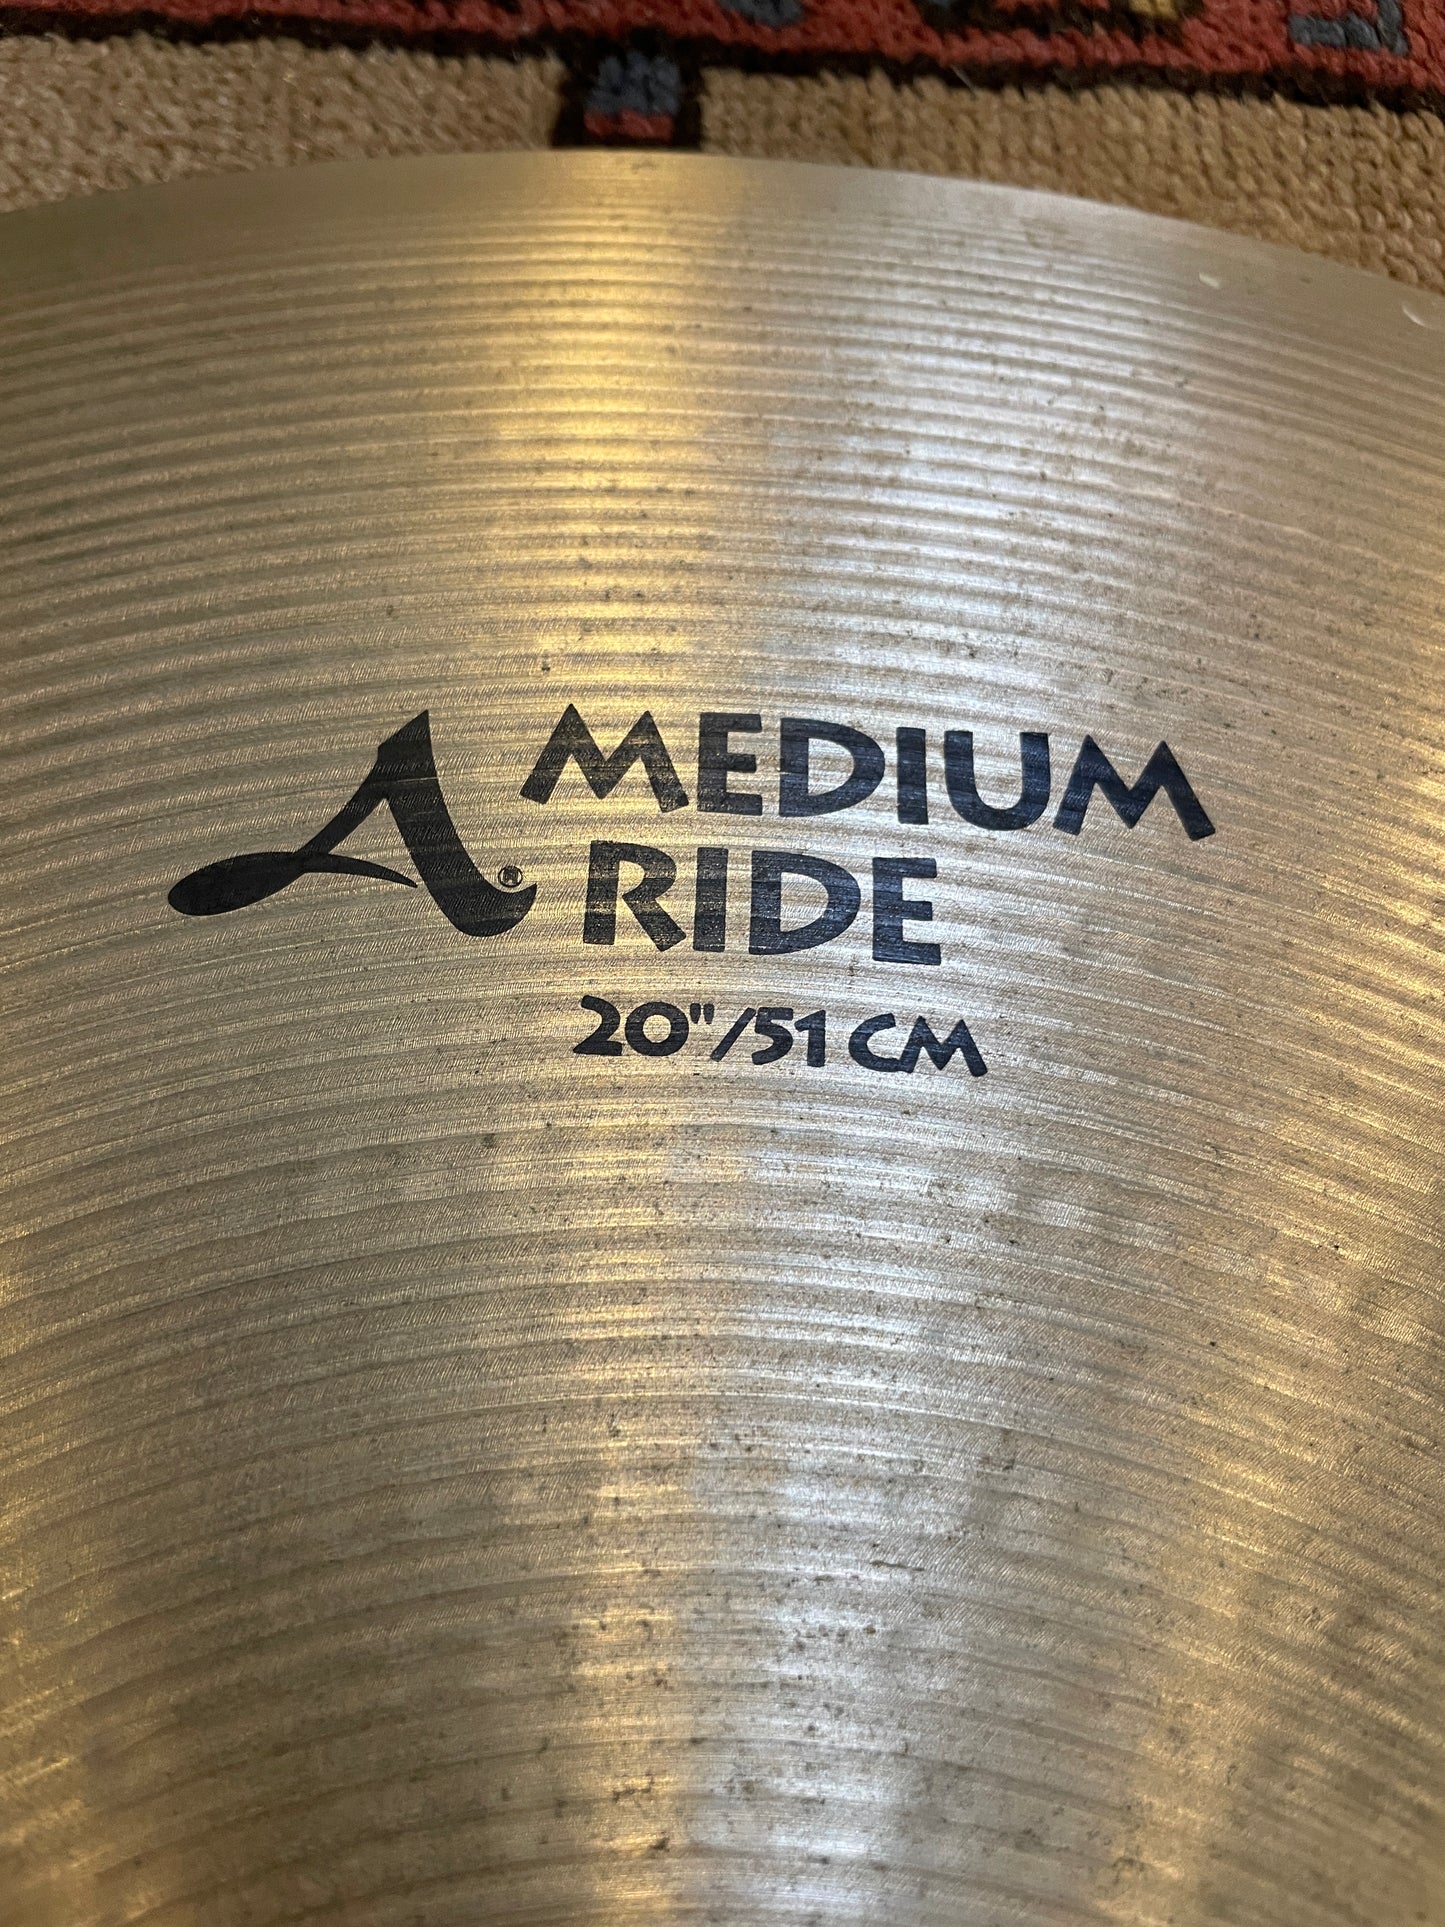 20" Zildjian A Medium Ride Cymbal 2518g A0034